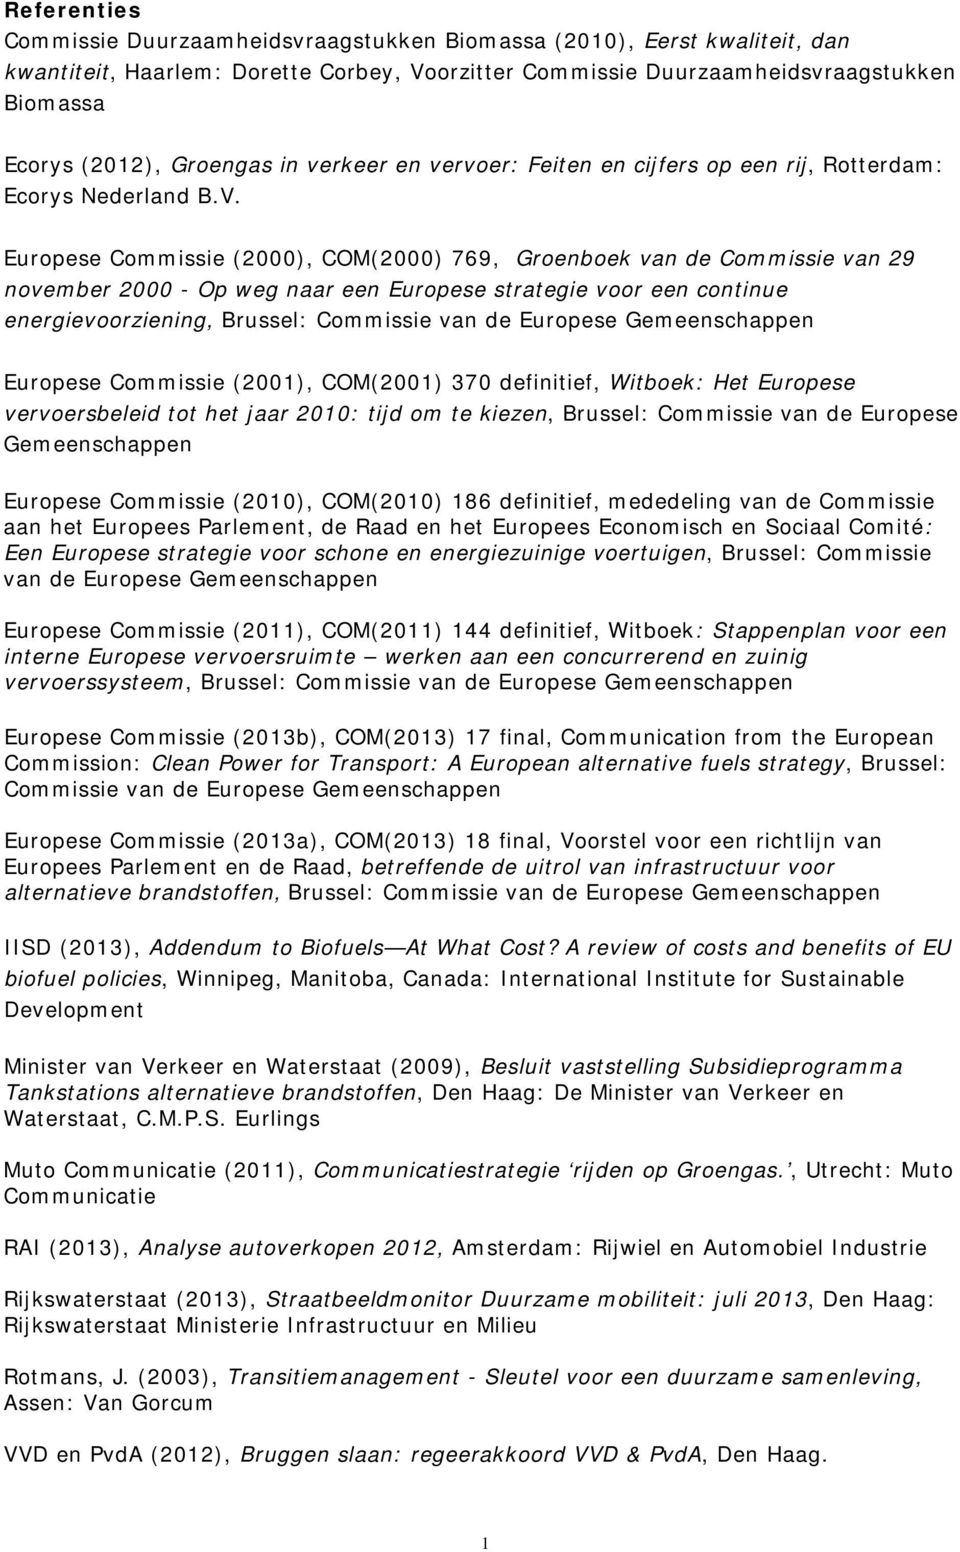 Europese Commissie (2000), COM(2000) 769, Groenboek van de Commissie van 29 november 2000 - Op weg naar een Europese strategie voor een continue energievoorziening, Brussel: Commissie van de Europese